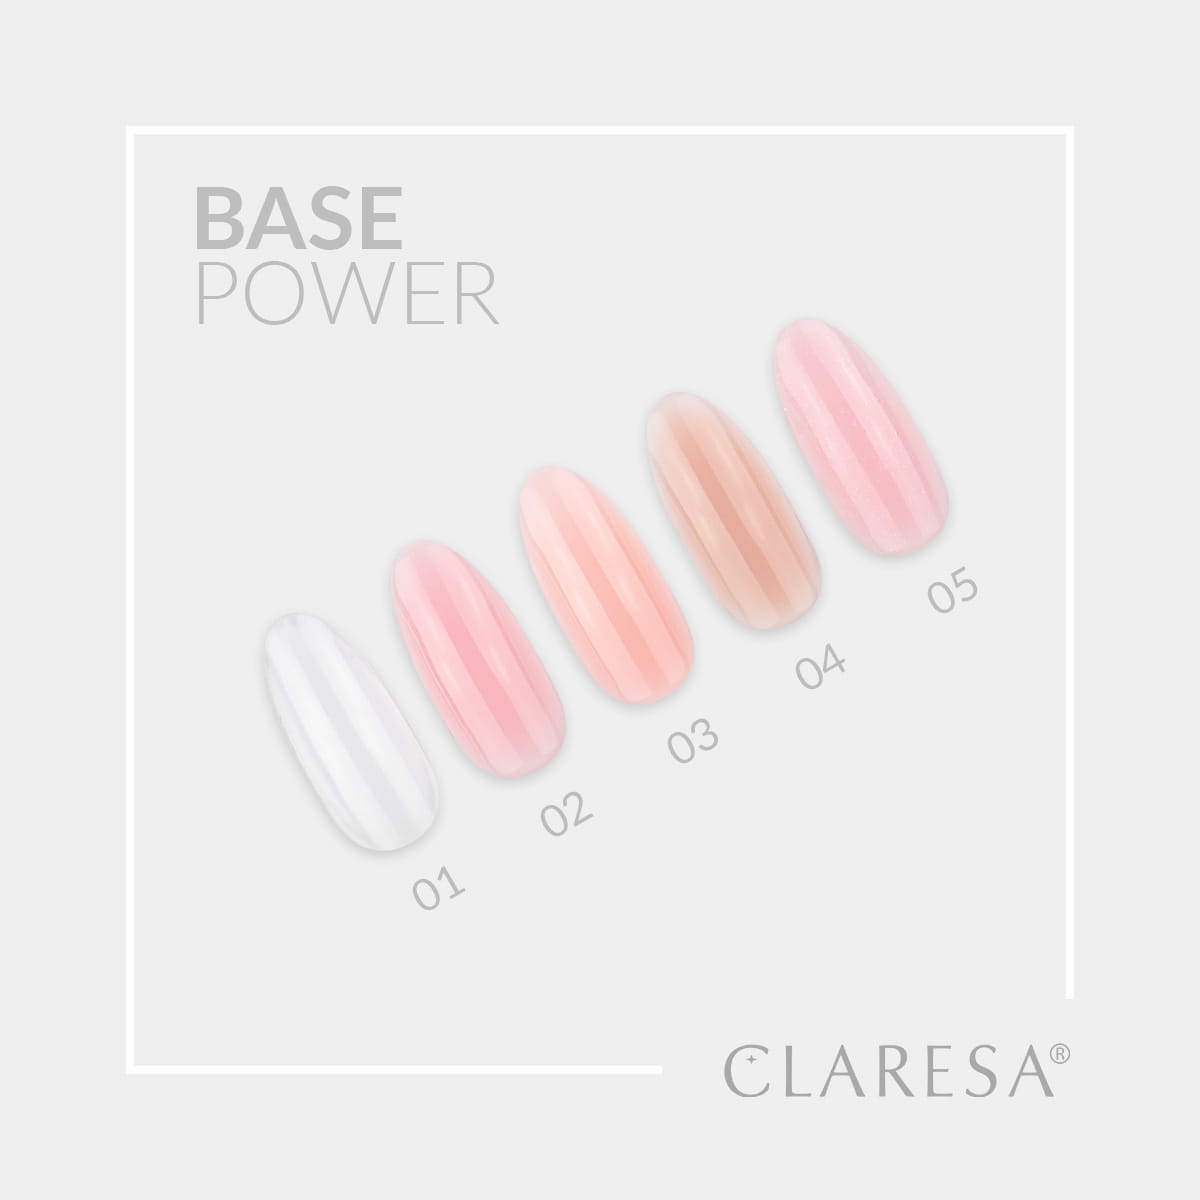 Claresa-Power-Base_eb34f5df-d564-4245-abce-338a077a8f75.jpg